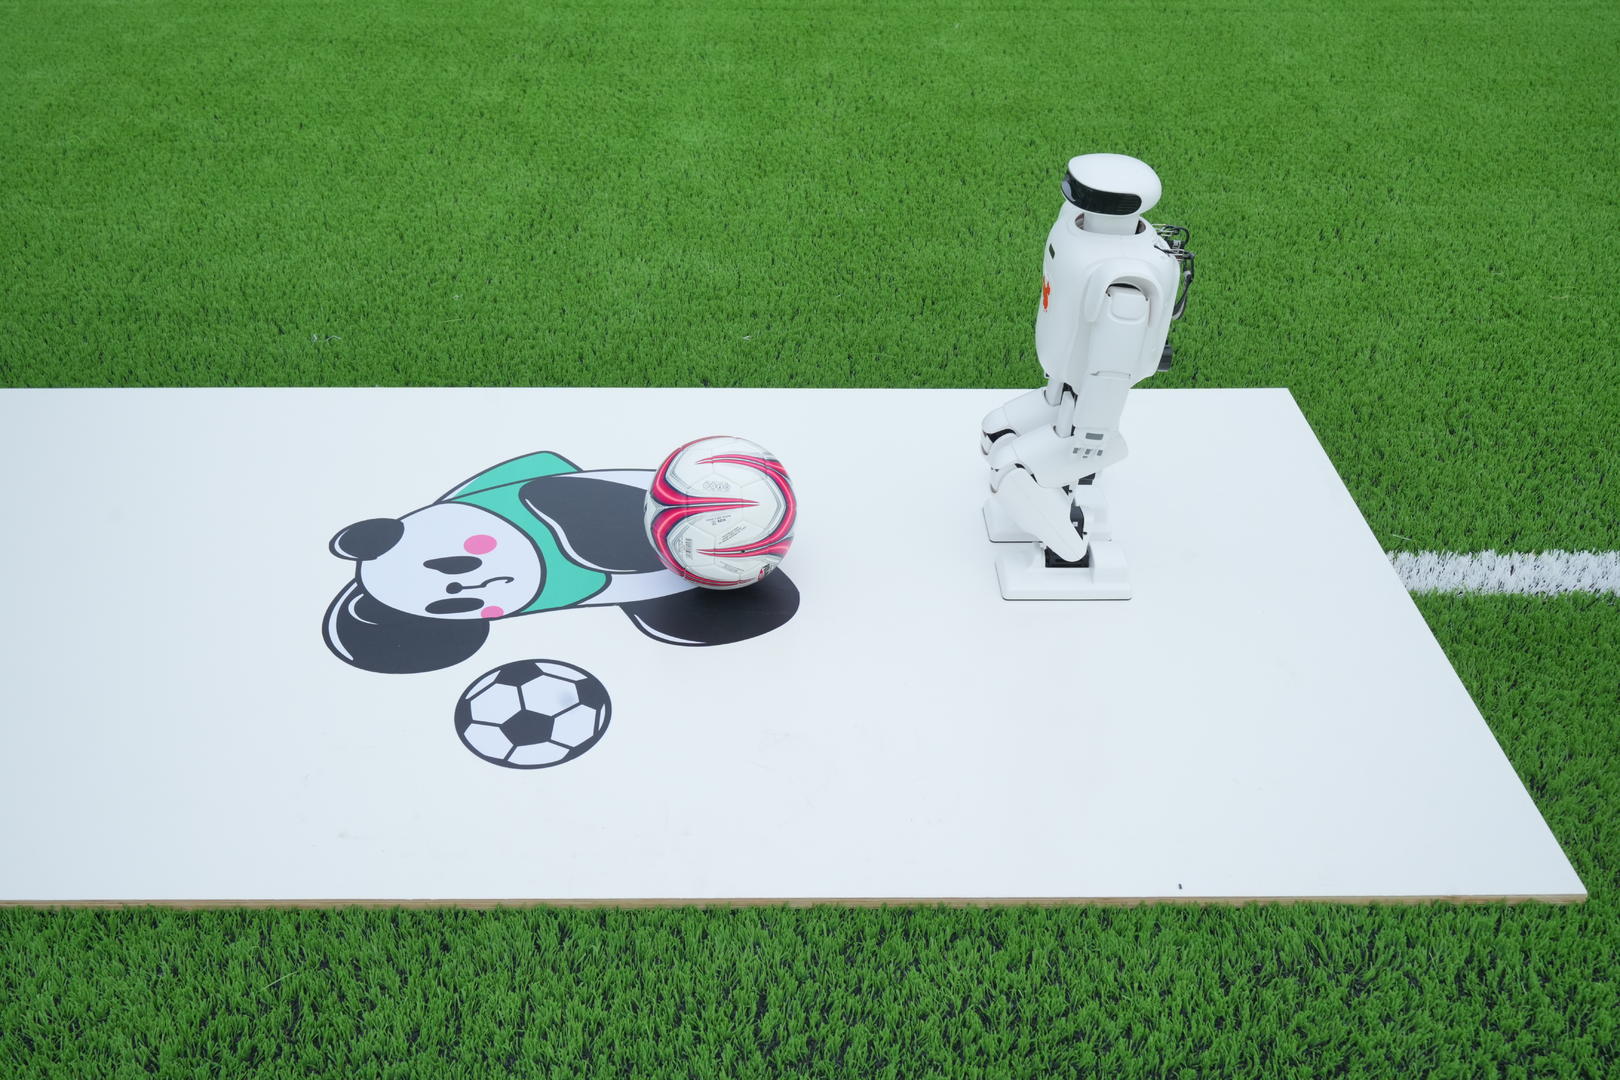 <b>泛亚电竞铺设FIFA认证草皮，机器人开球！绵阳科技城新区兴隆足球公园开园</b>